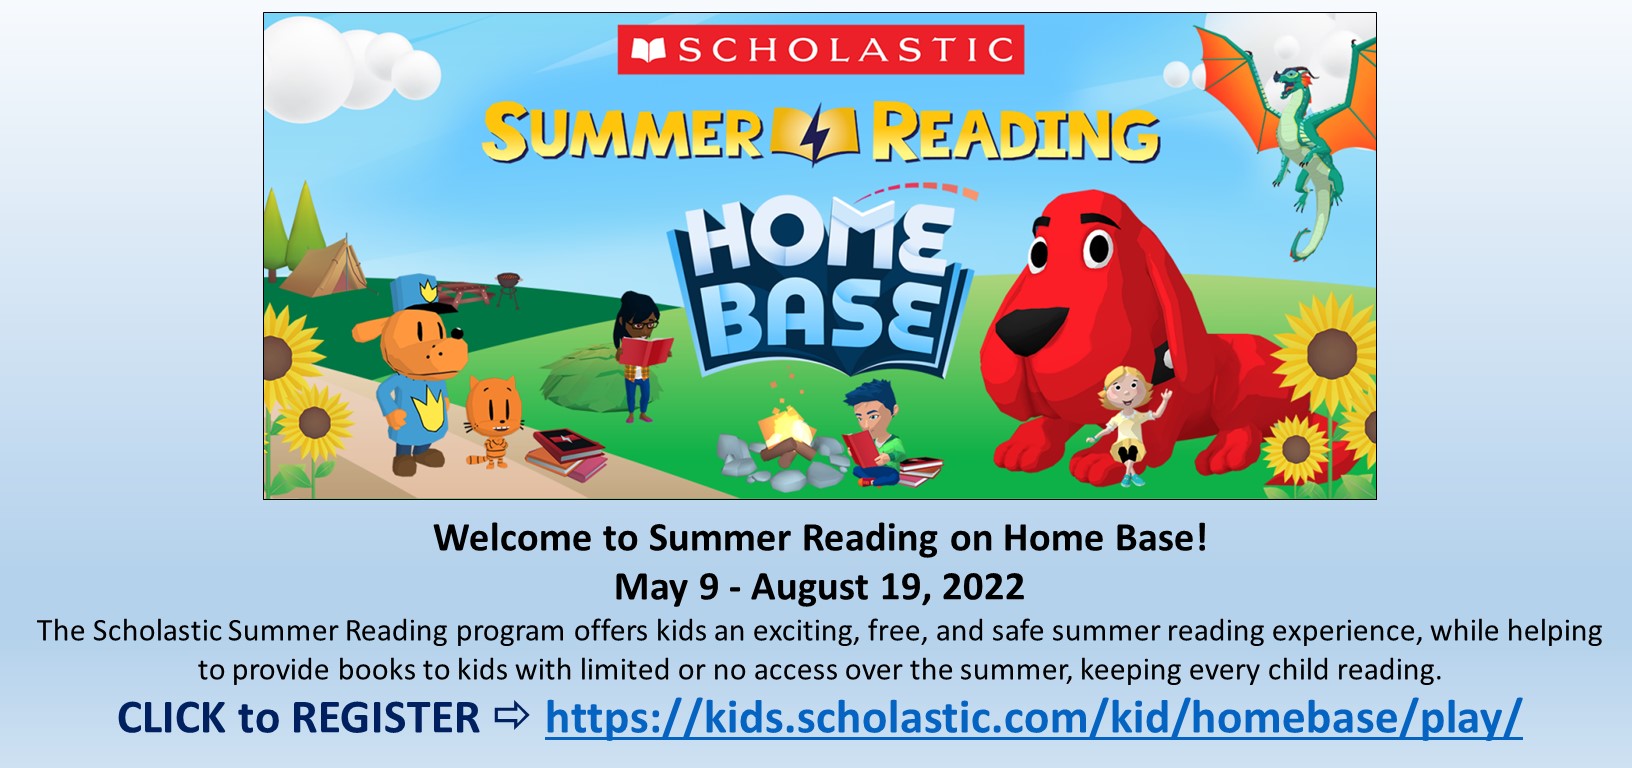 Scholastic Summer Reading School Website